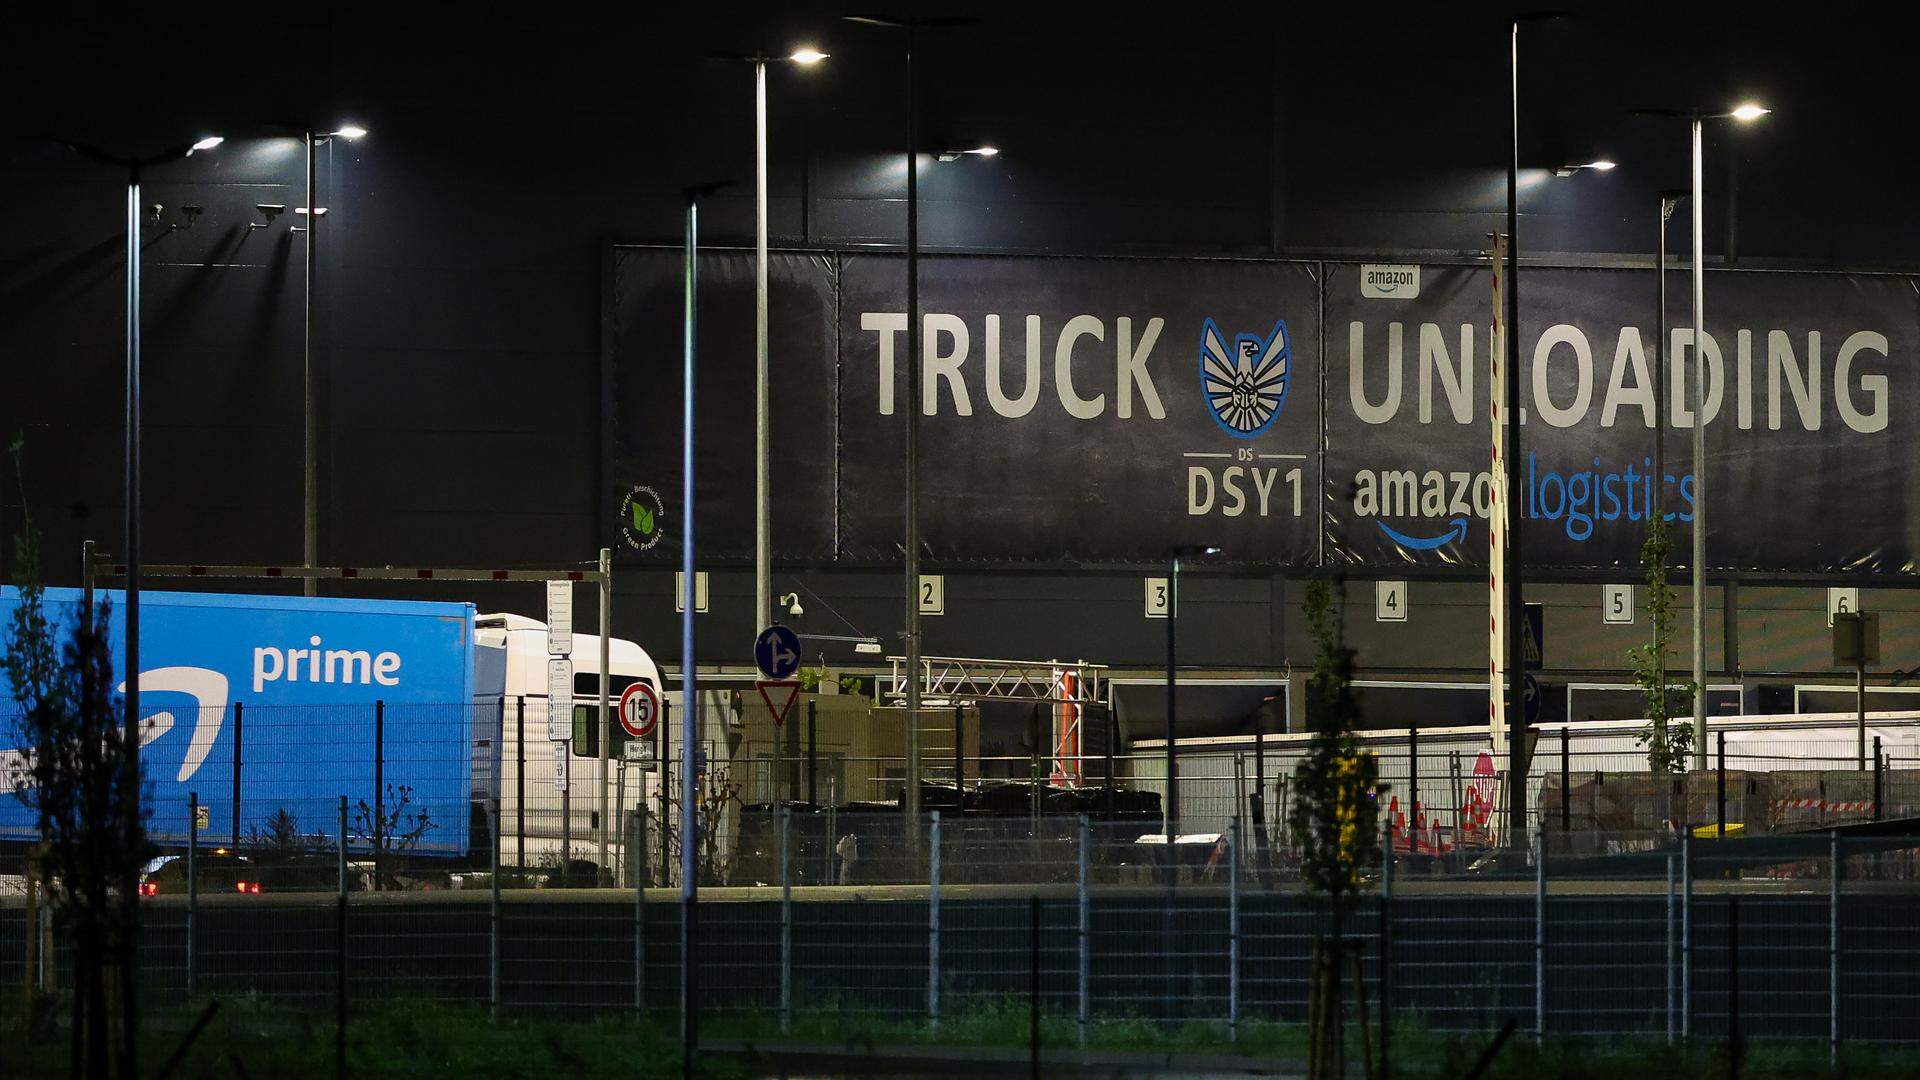 Ein Lkw von Amazon Prime fährt zum Amazon Logistikstandort am Flughafen Leipzig-Halle. Der Flughafen ist nach eigenen Angaben das viertgrößte Luftfrachtdrehkreuz in Europa mit einem jährlichen Frachtaufkommen von rund 1,51 Millionen Tonnen. 